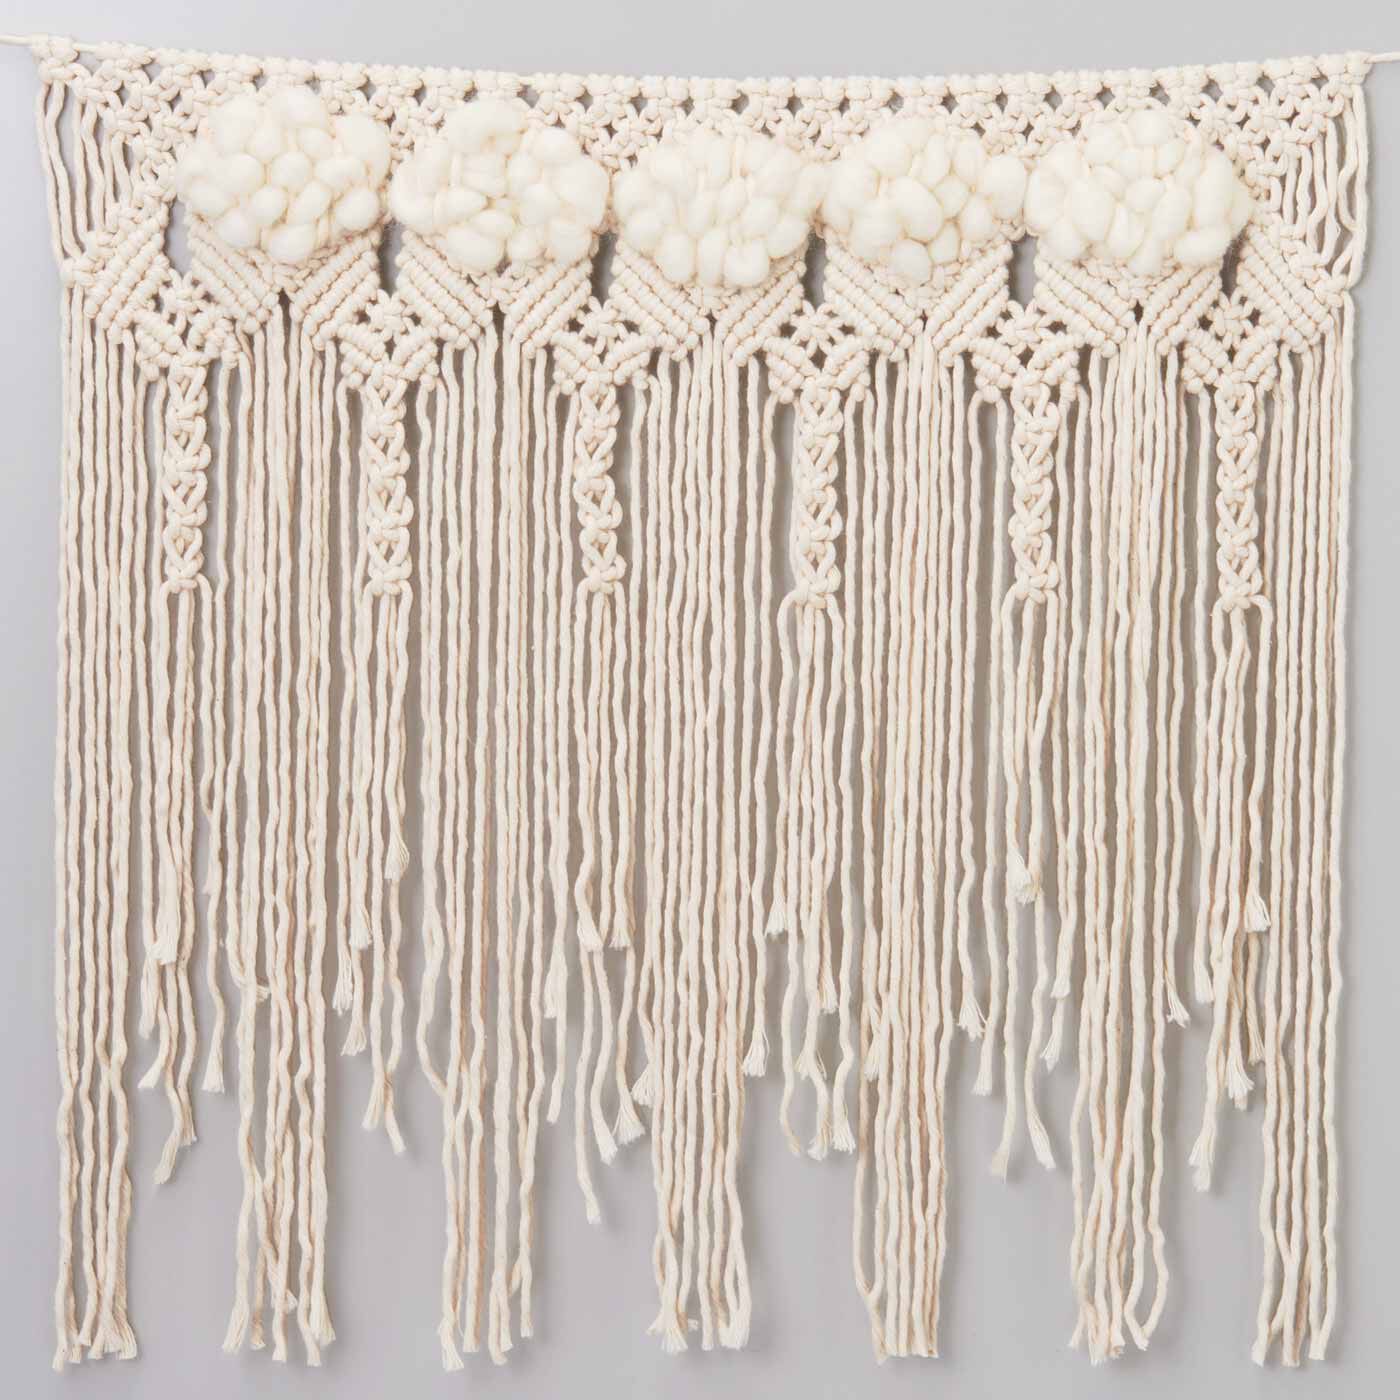 Real Stock|やわらかい甘撚（よ）り糸で作る マクラメガーランドキット|〈2. 平結びとパイル織り〉